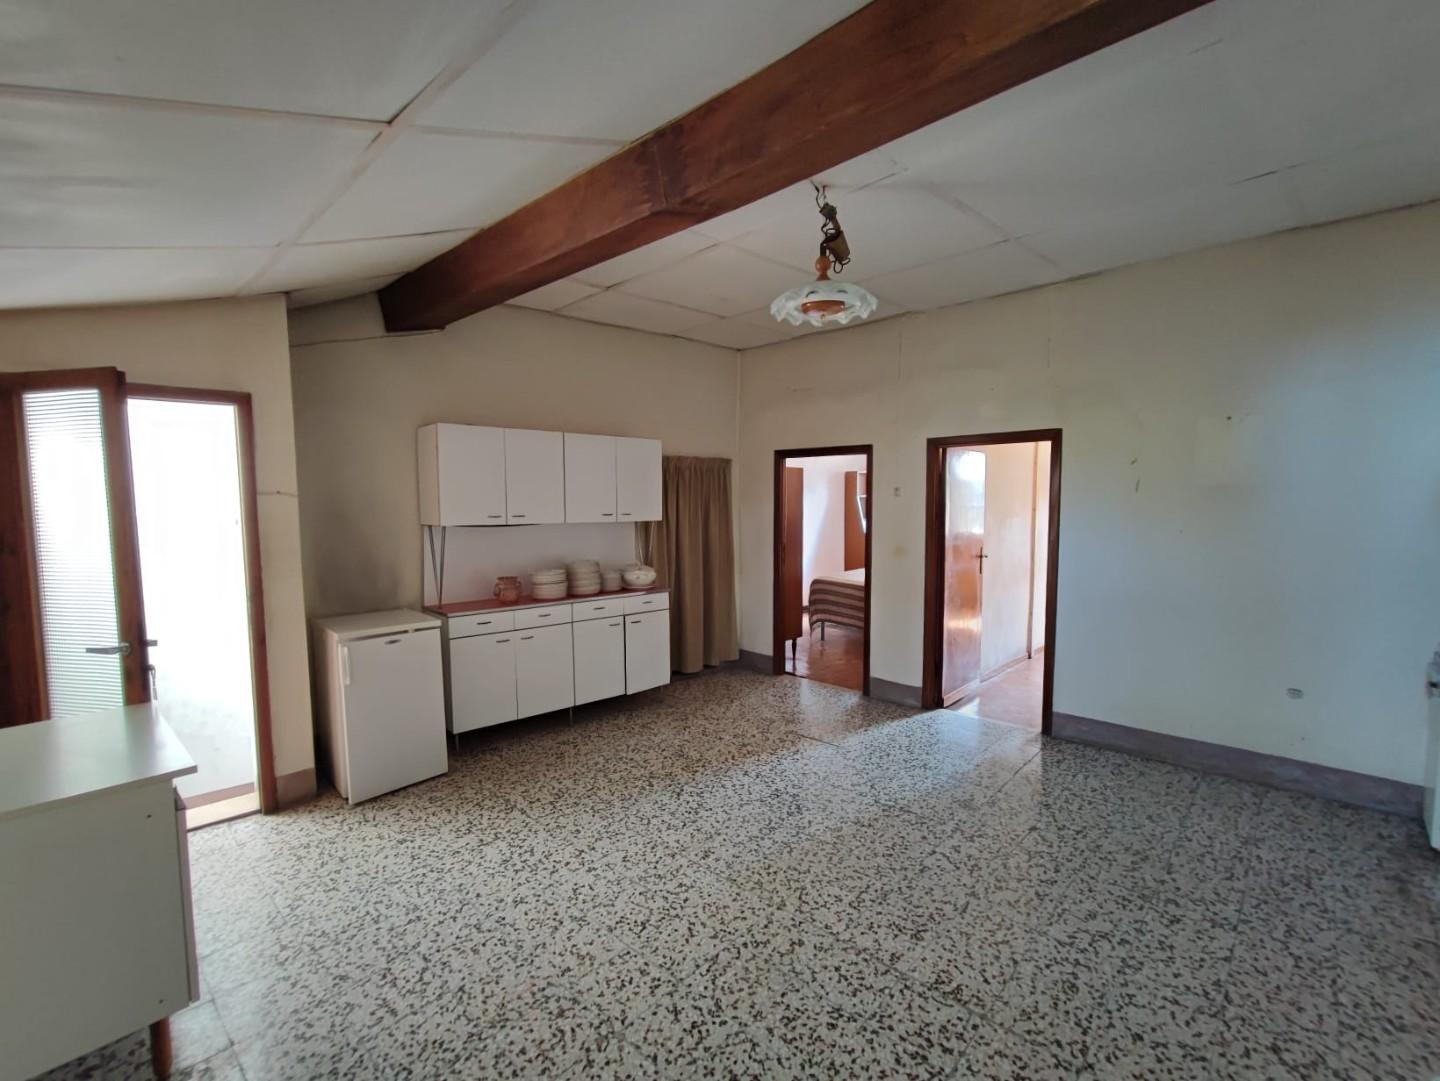 Apartment for sale in Terricciola (PI)